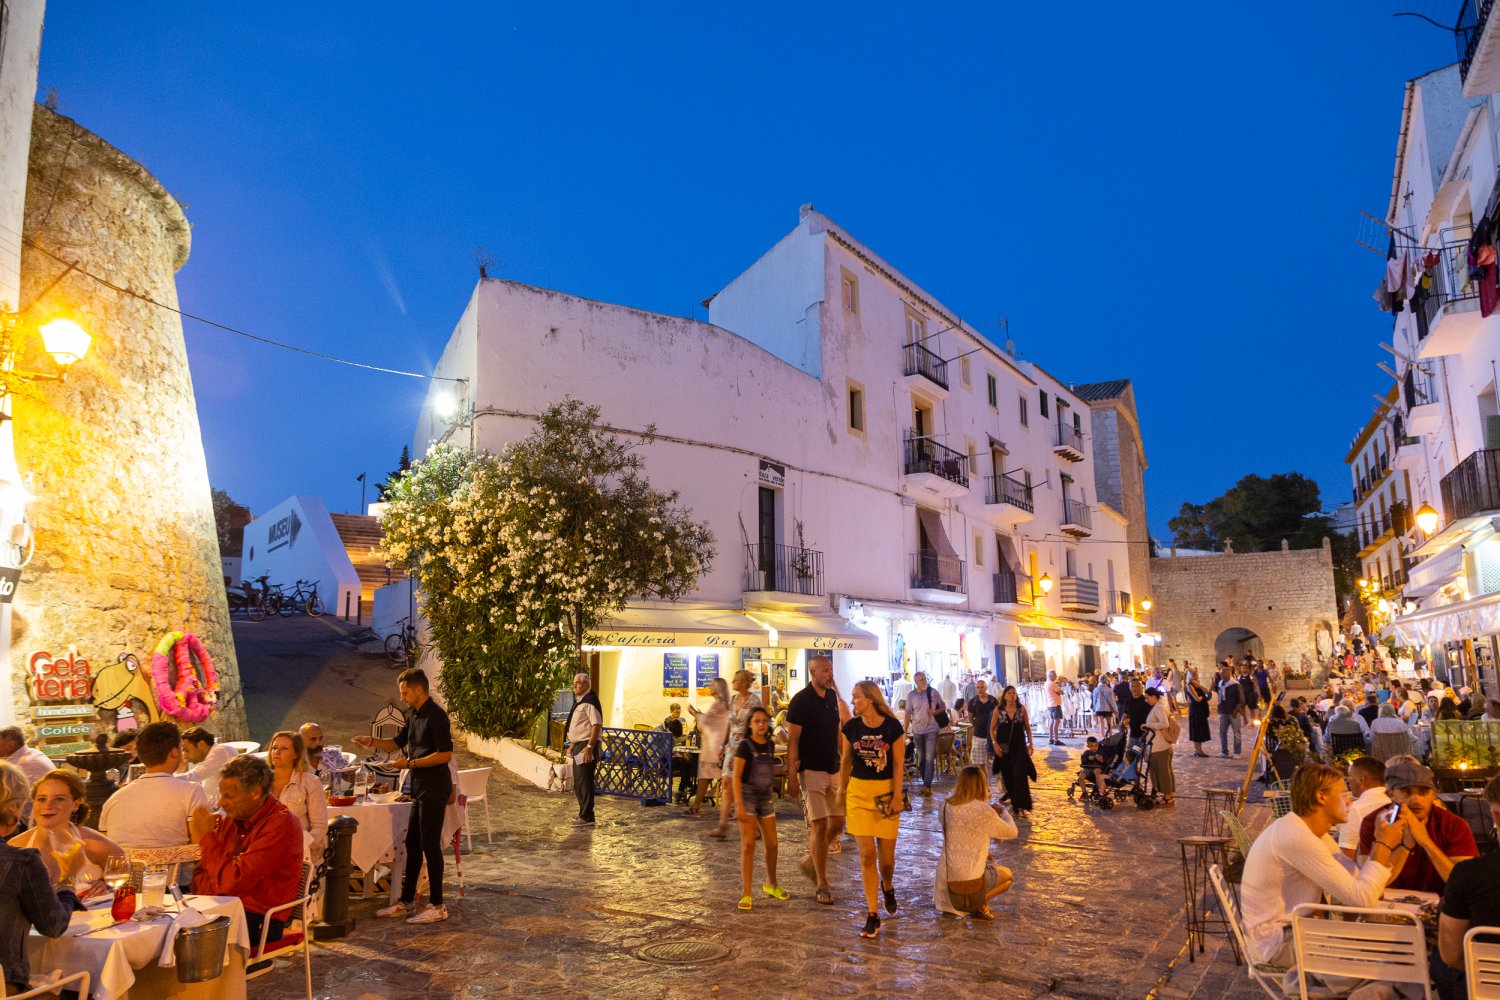 Ibiza Town - The capital city of Ibiza